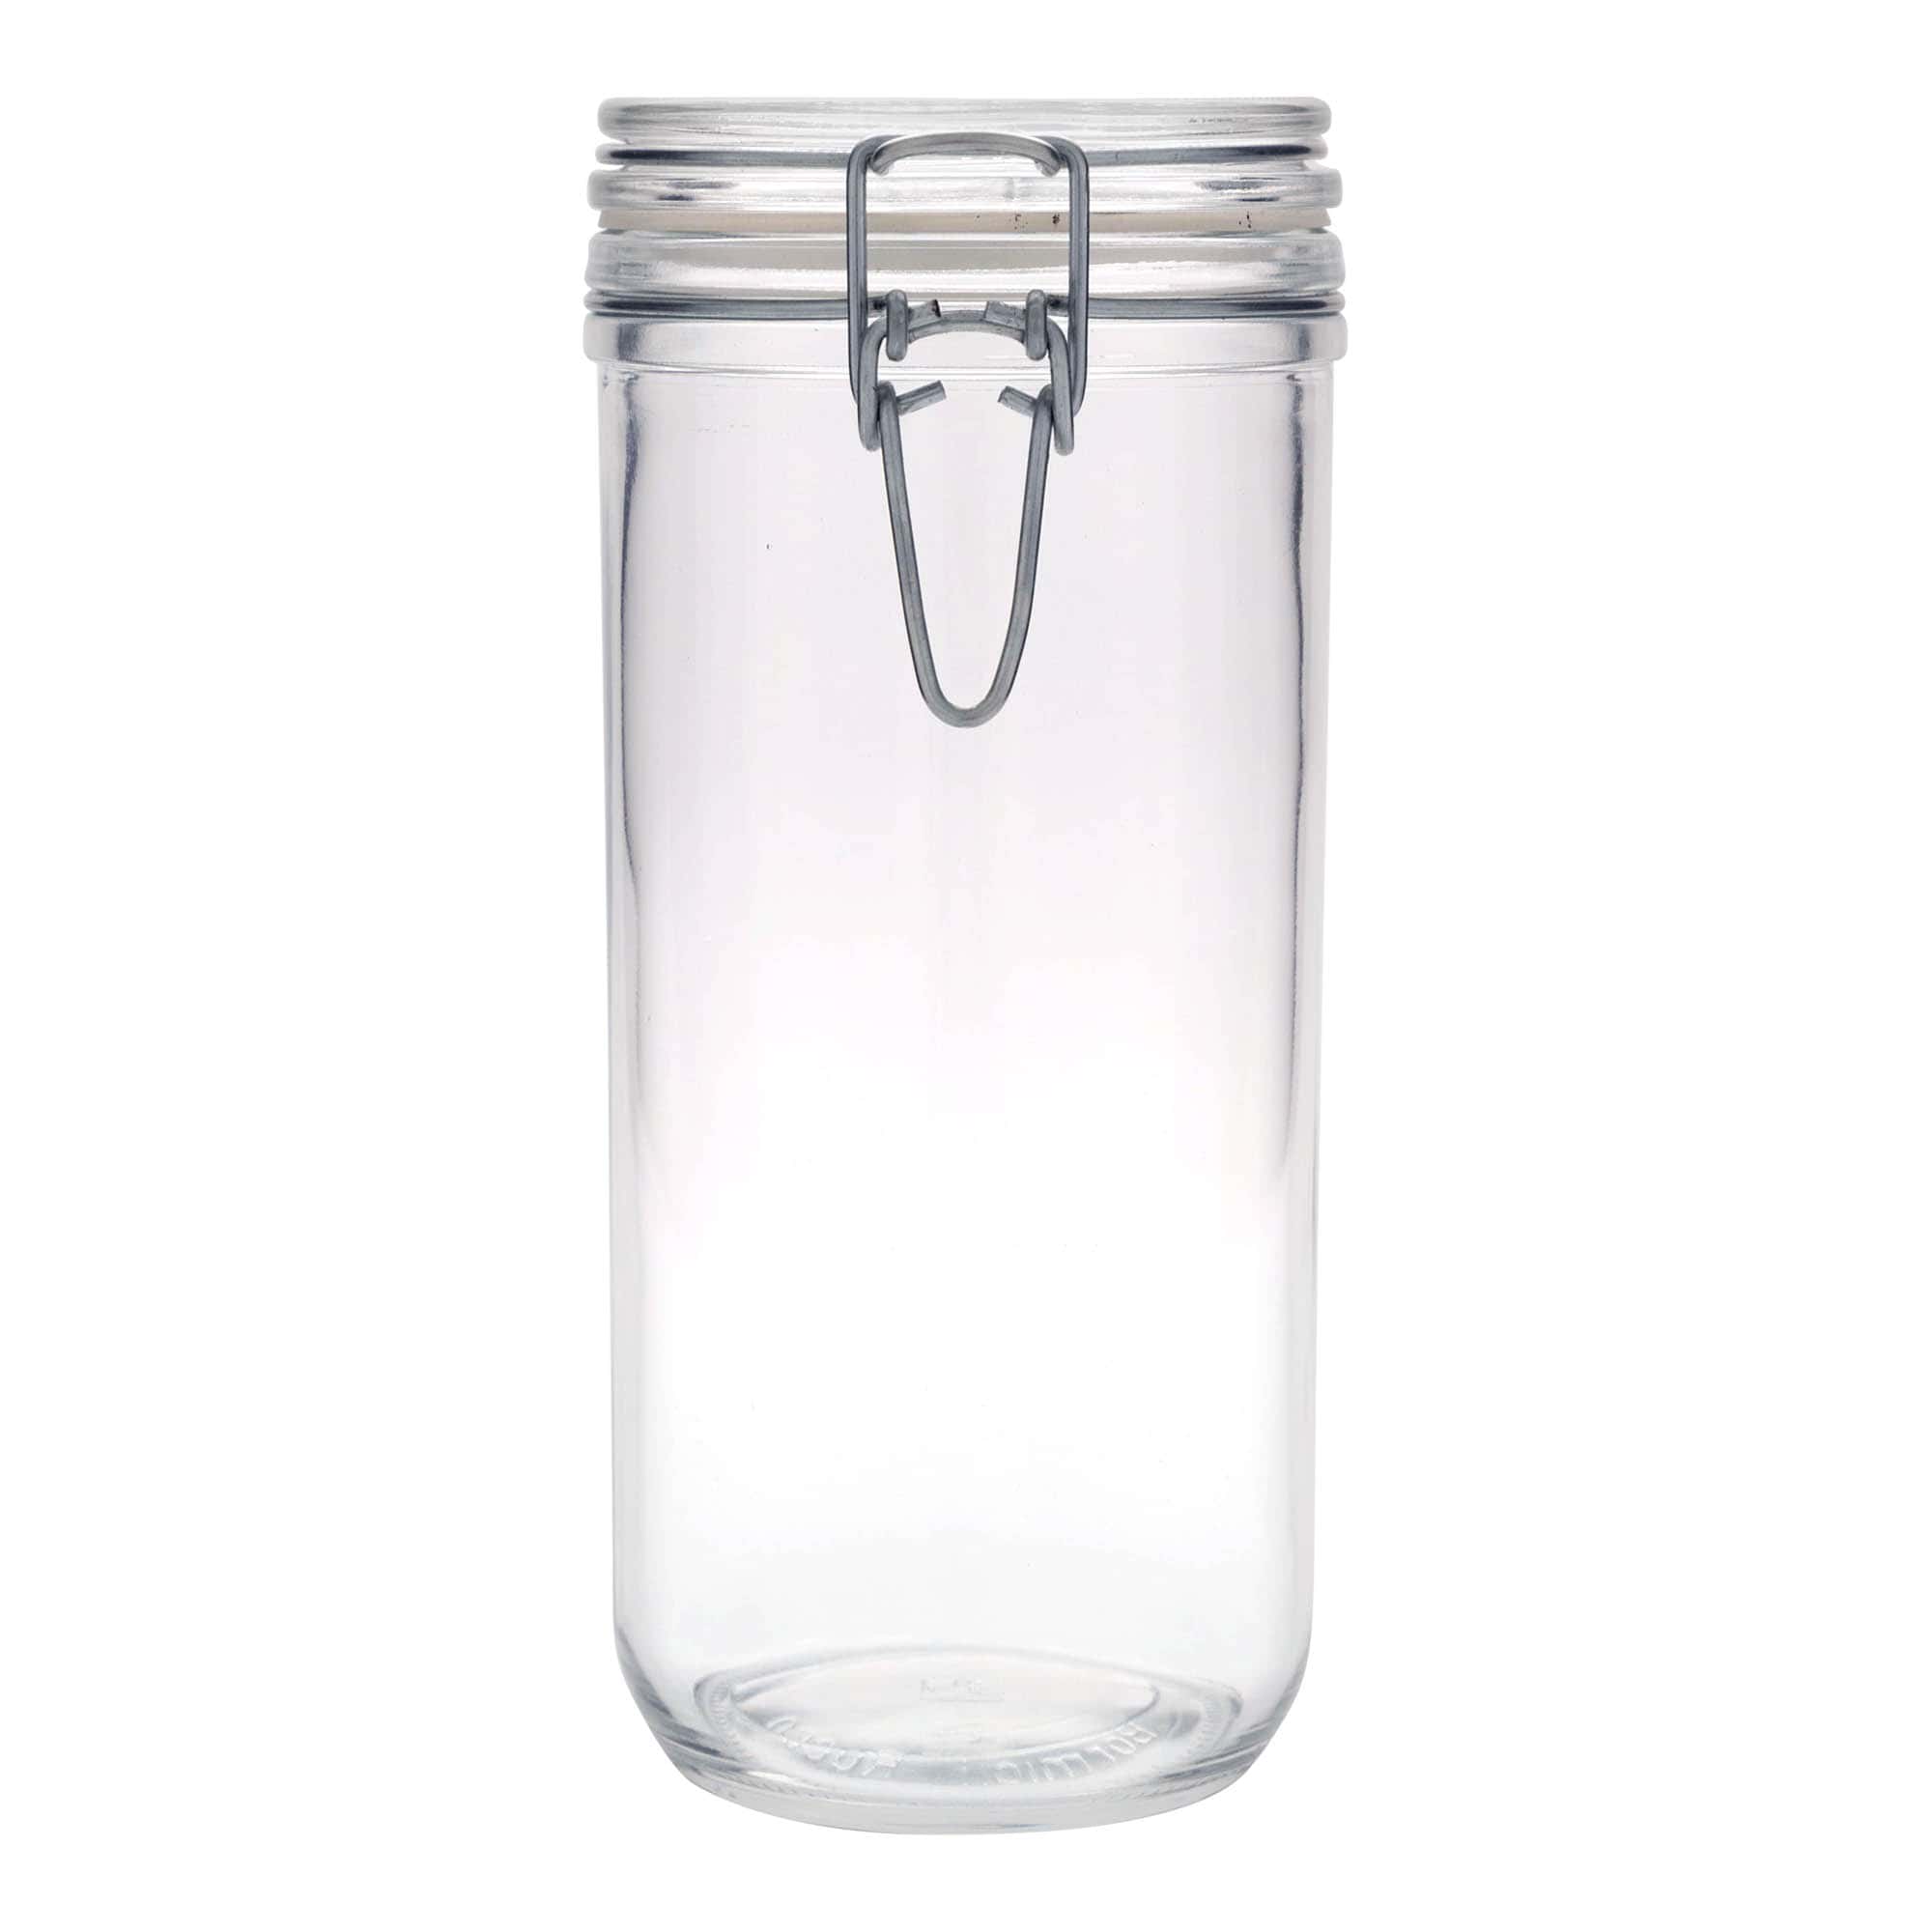 1,000 ml clip top jar 'Fido', closure: clip top